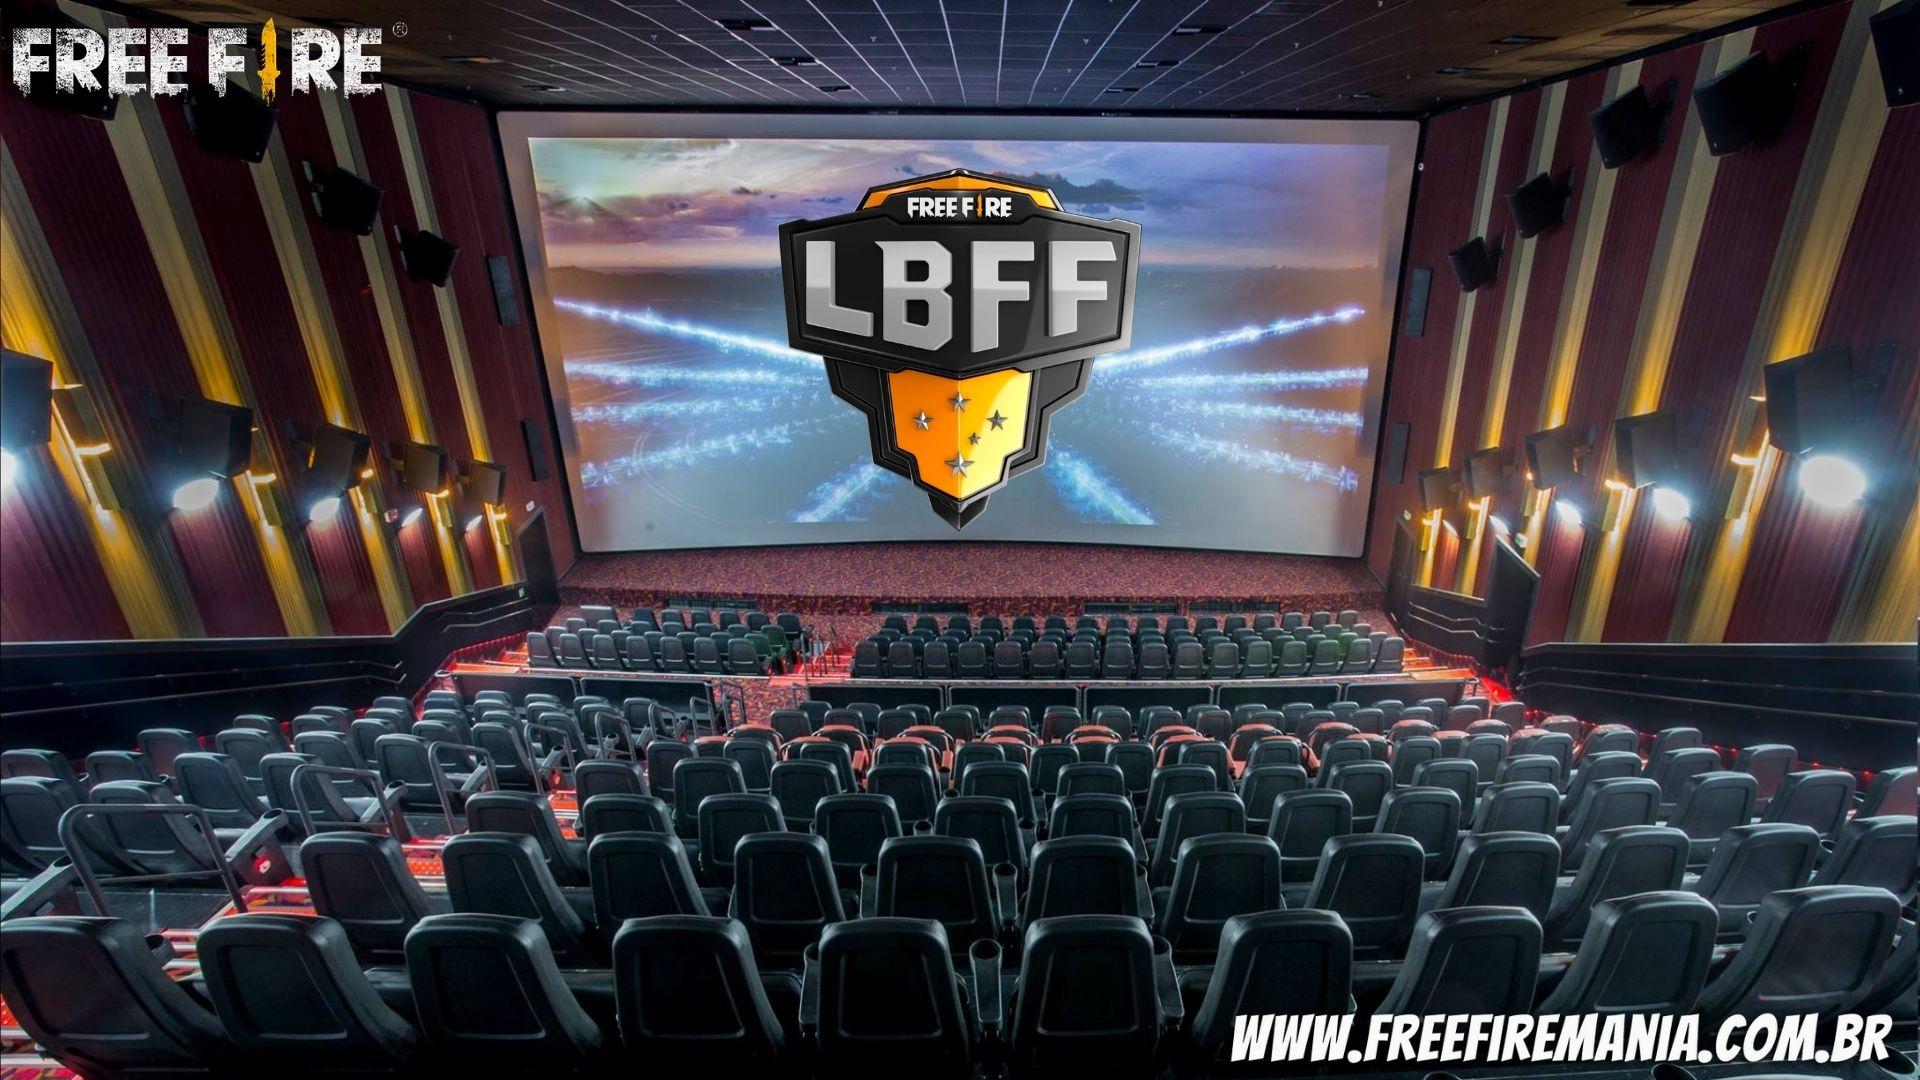 Free Fire no Cinemark: com direito a CODIGUIN, final da LBFF será transmitida no cinema